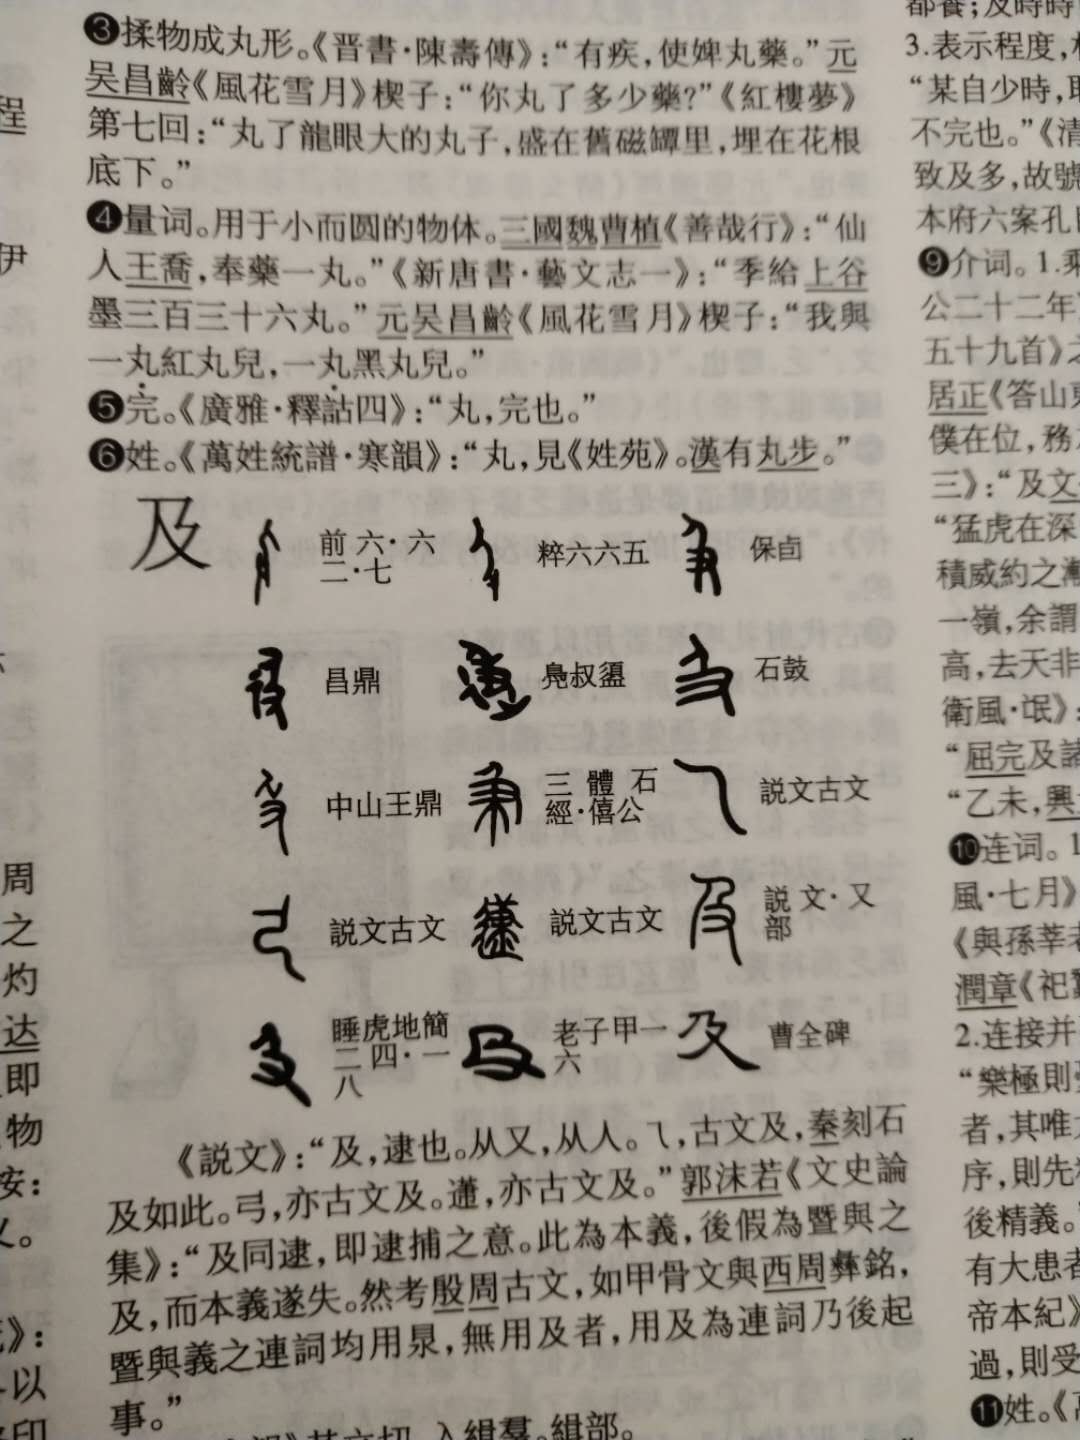 《汉语大字典》是当代的《康熙字典》、是一部包括了《康熙字典、说文解字》等历代文字学精华的盛世巨典！《汉语大字典》还收集了历代出土文物上的古汉字，是中国现在最好、最权威的、最精良的字典！和《辞海、辞源、汉语大词典》一起、是当代最权威的四大汉语巨著。与《辞源》等一起放在案头、也可以装装逼了